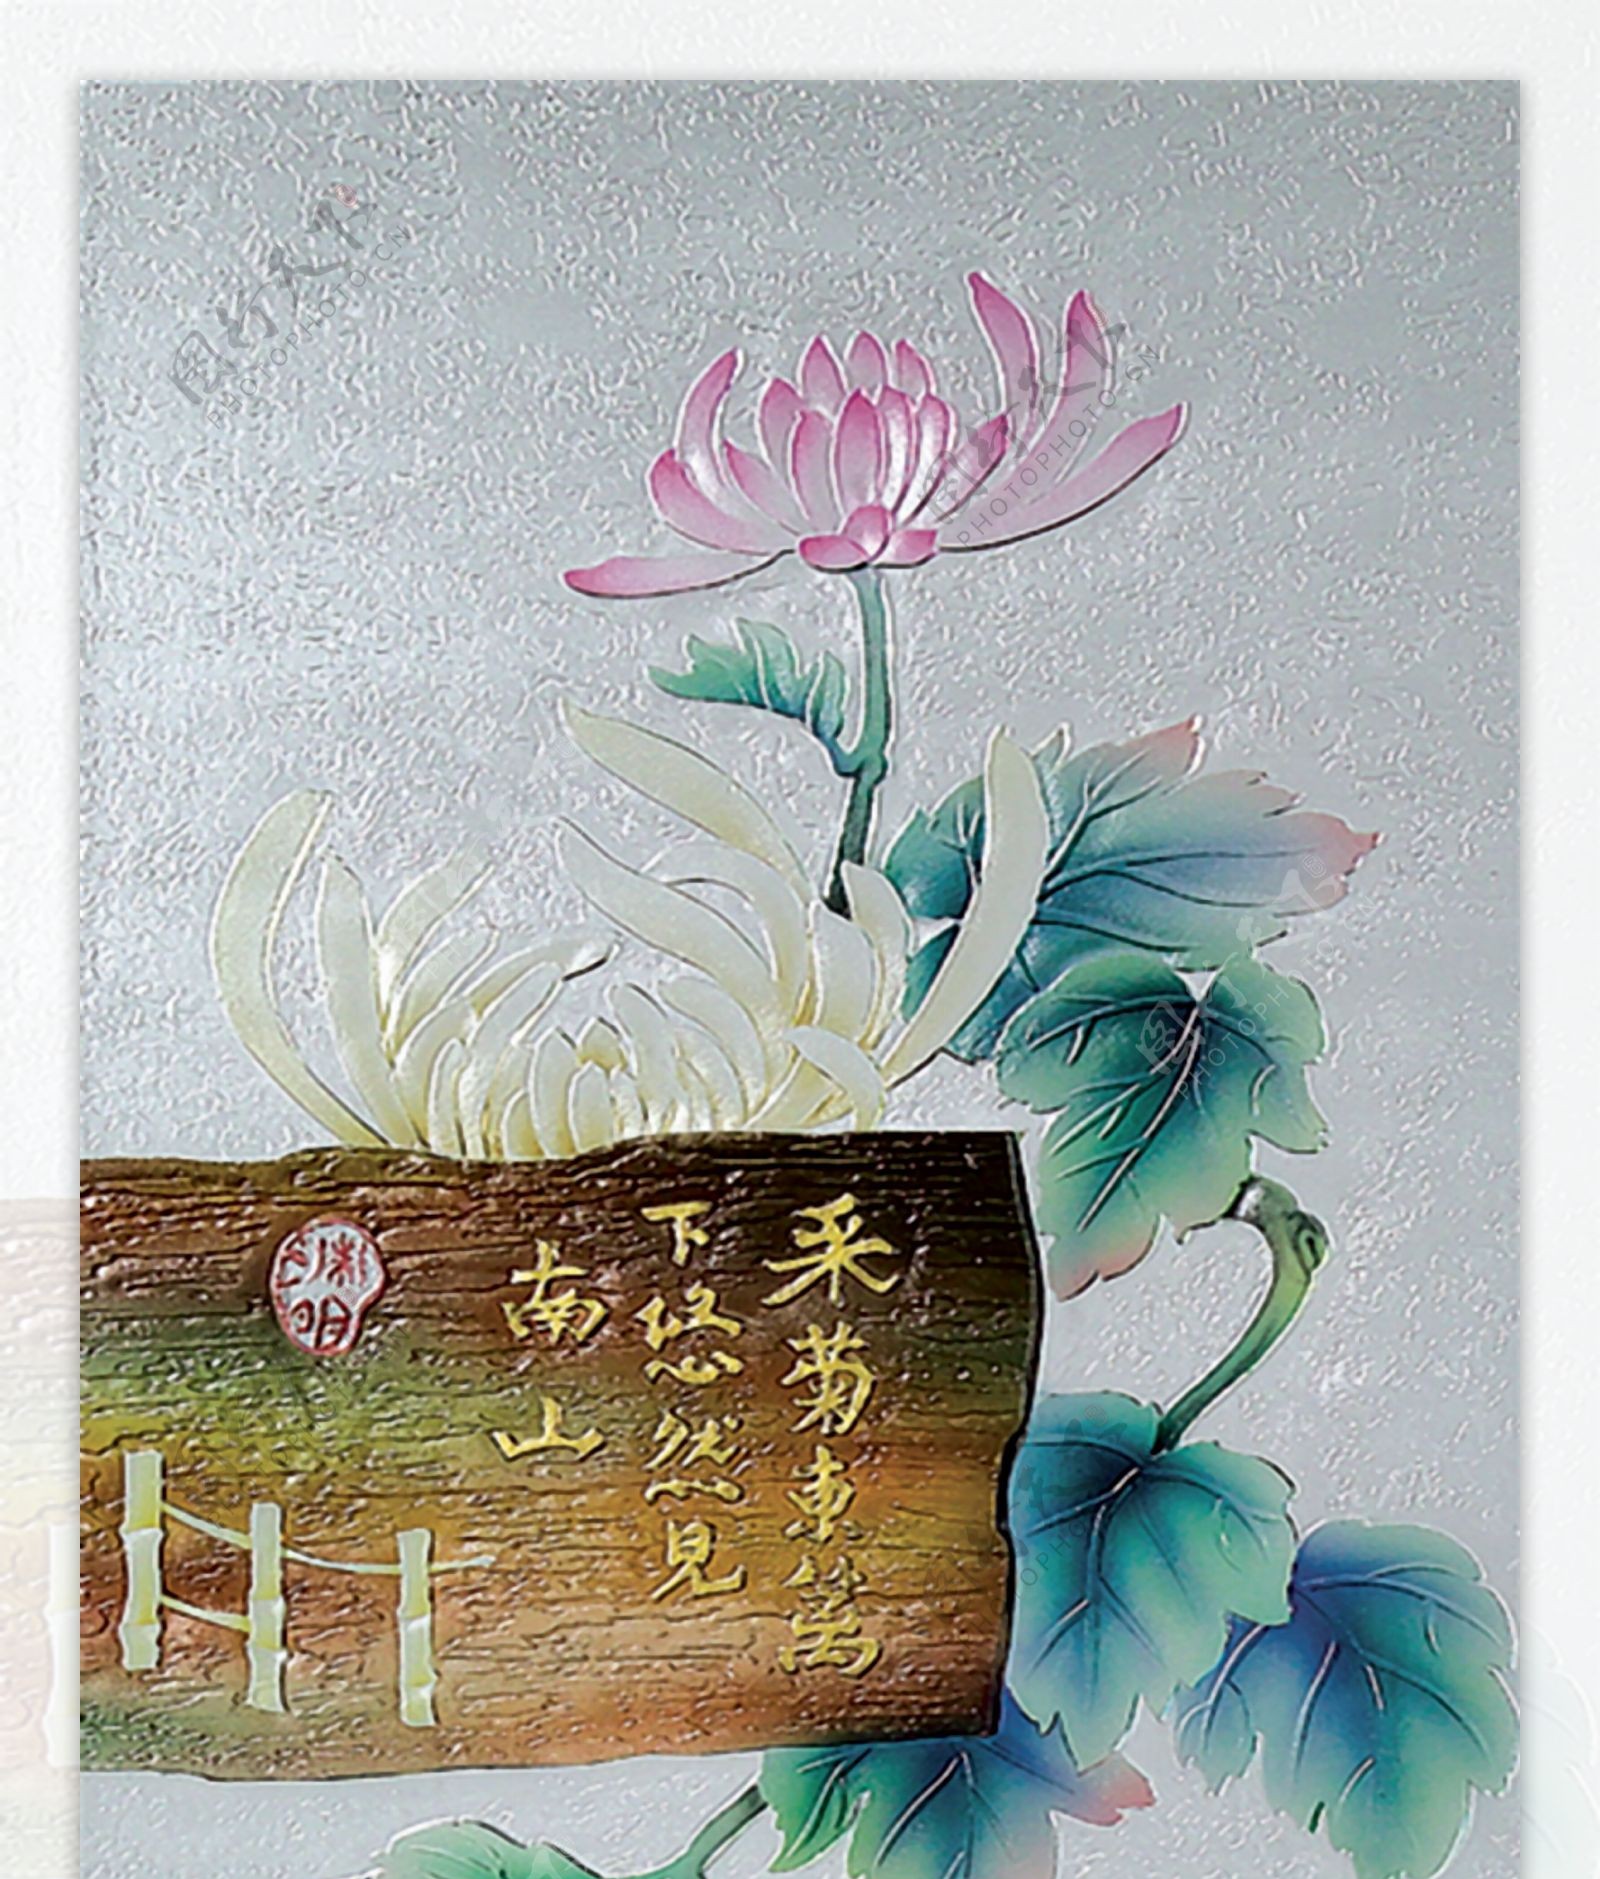 高清菊花浮雕背景图片